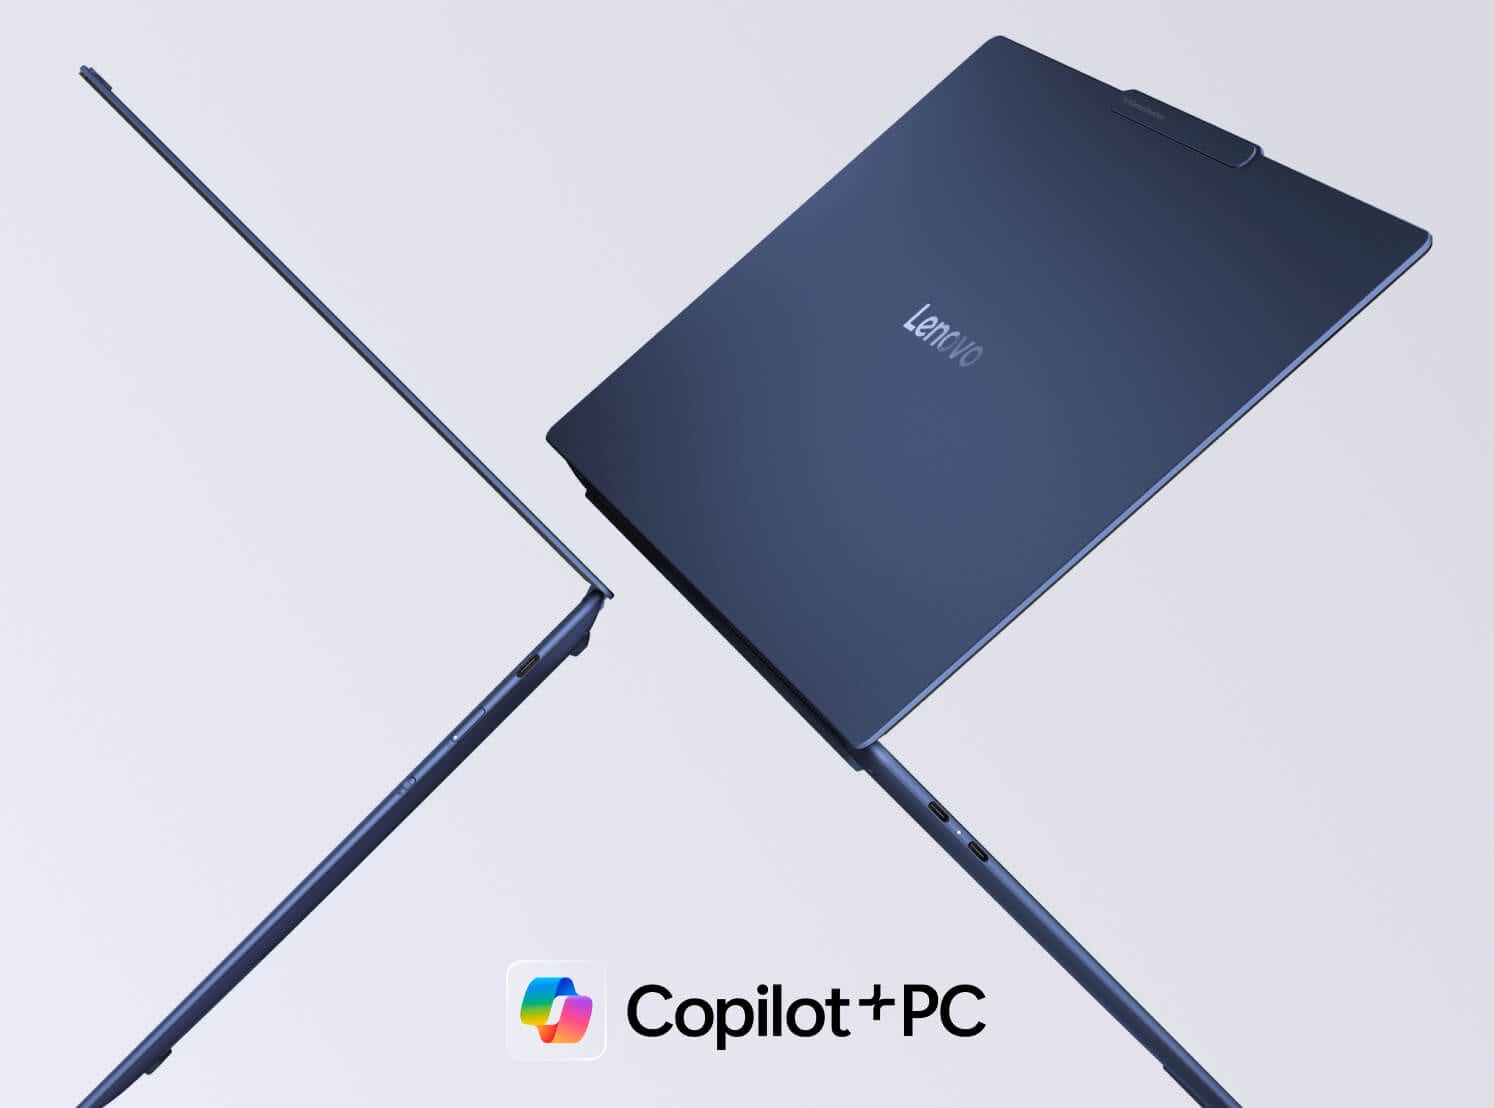 Dva notebooky Lenovo Yoga vznášející se ve vzduchu zády k sobě, s logem Copilot+PC